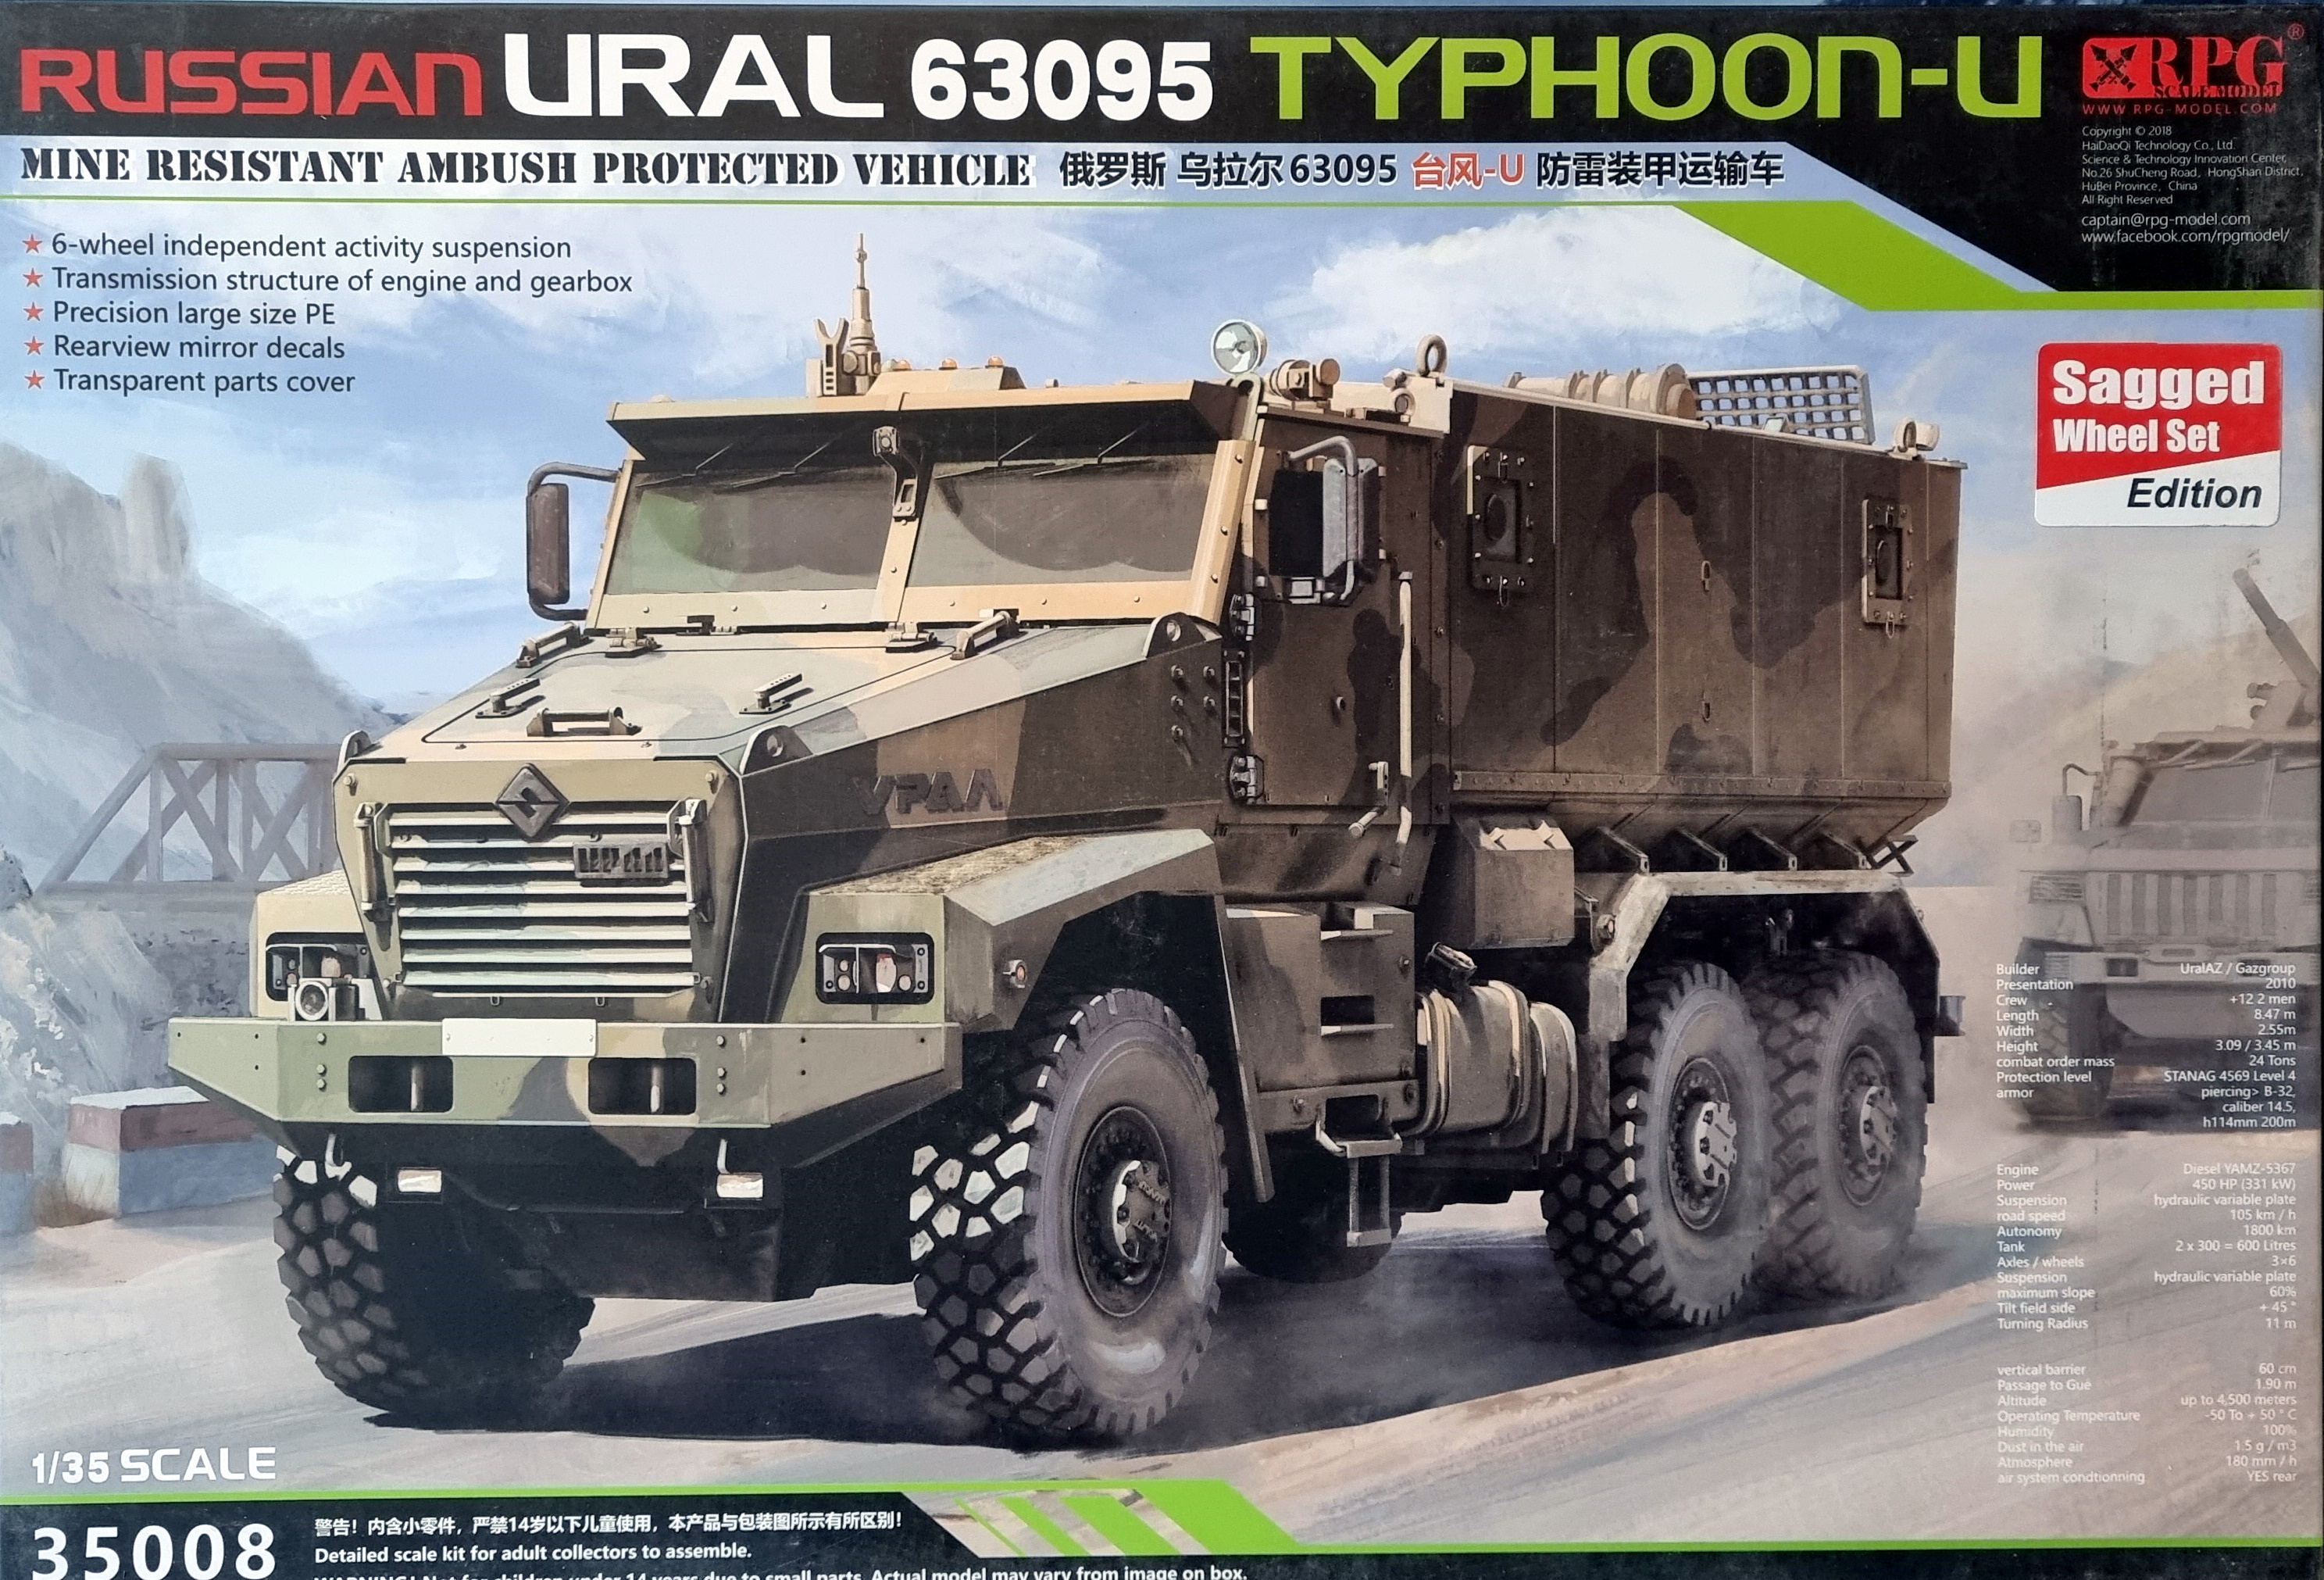 Russian URAL 63095 Typhoon-U + Sagged Wheels